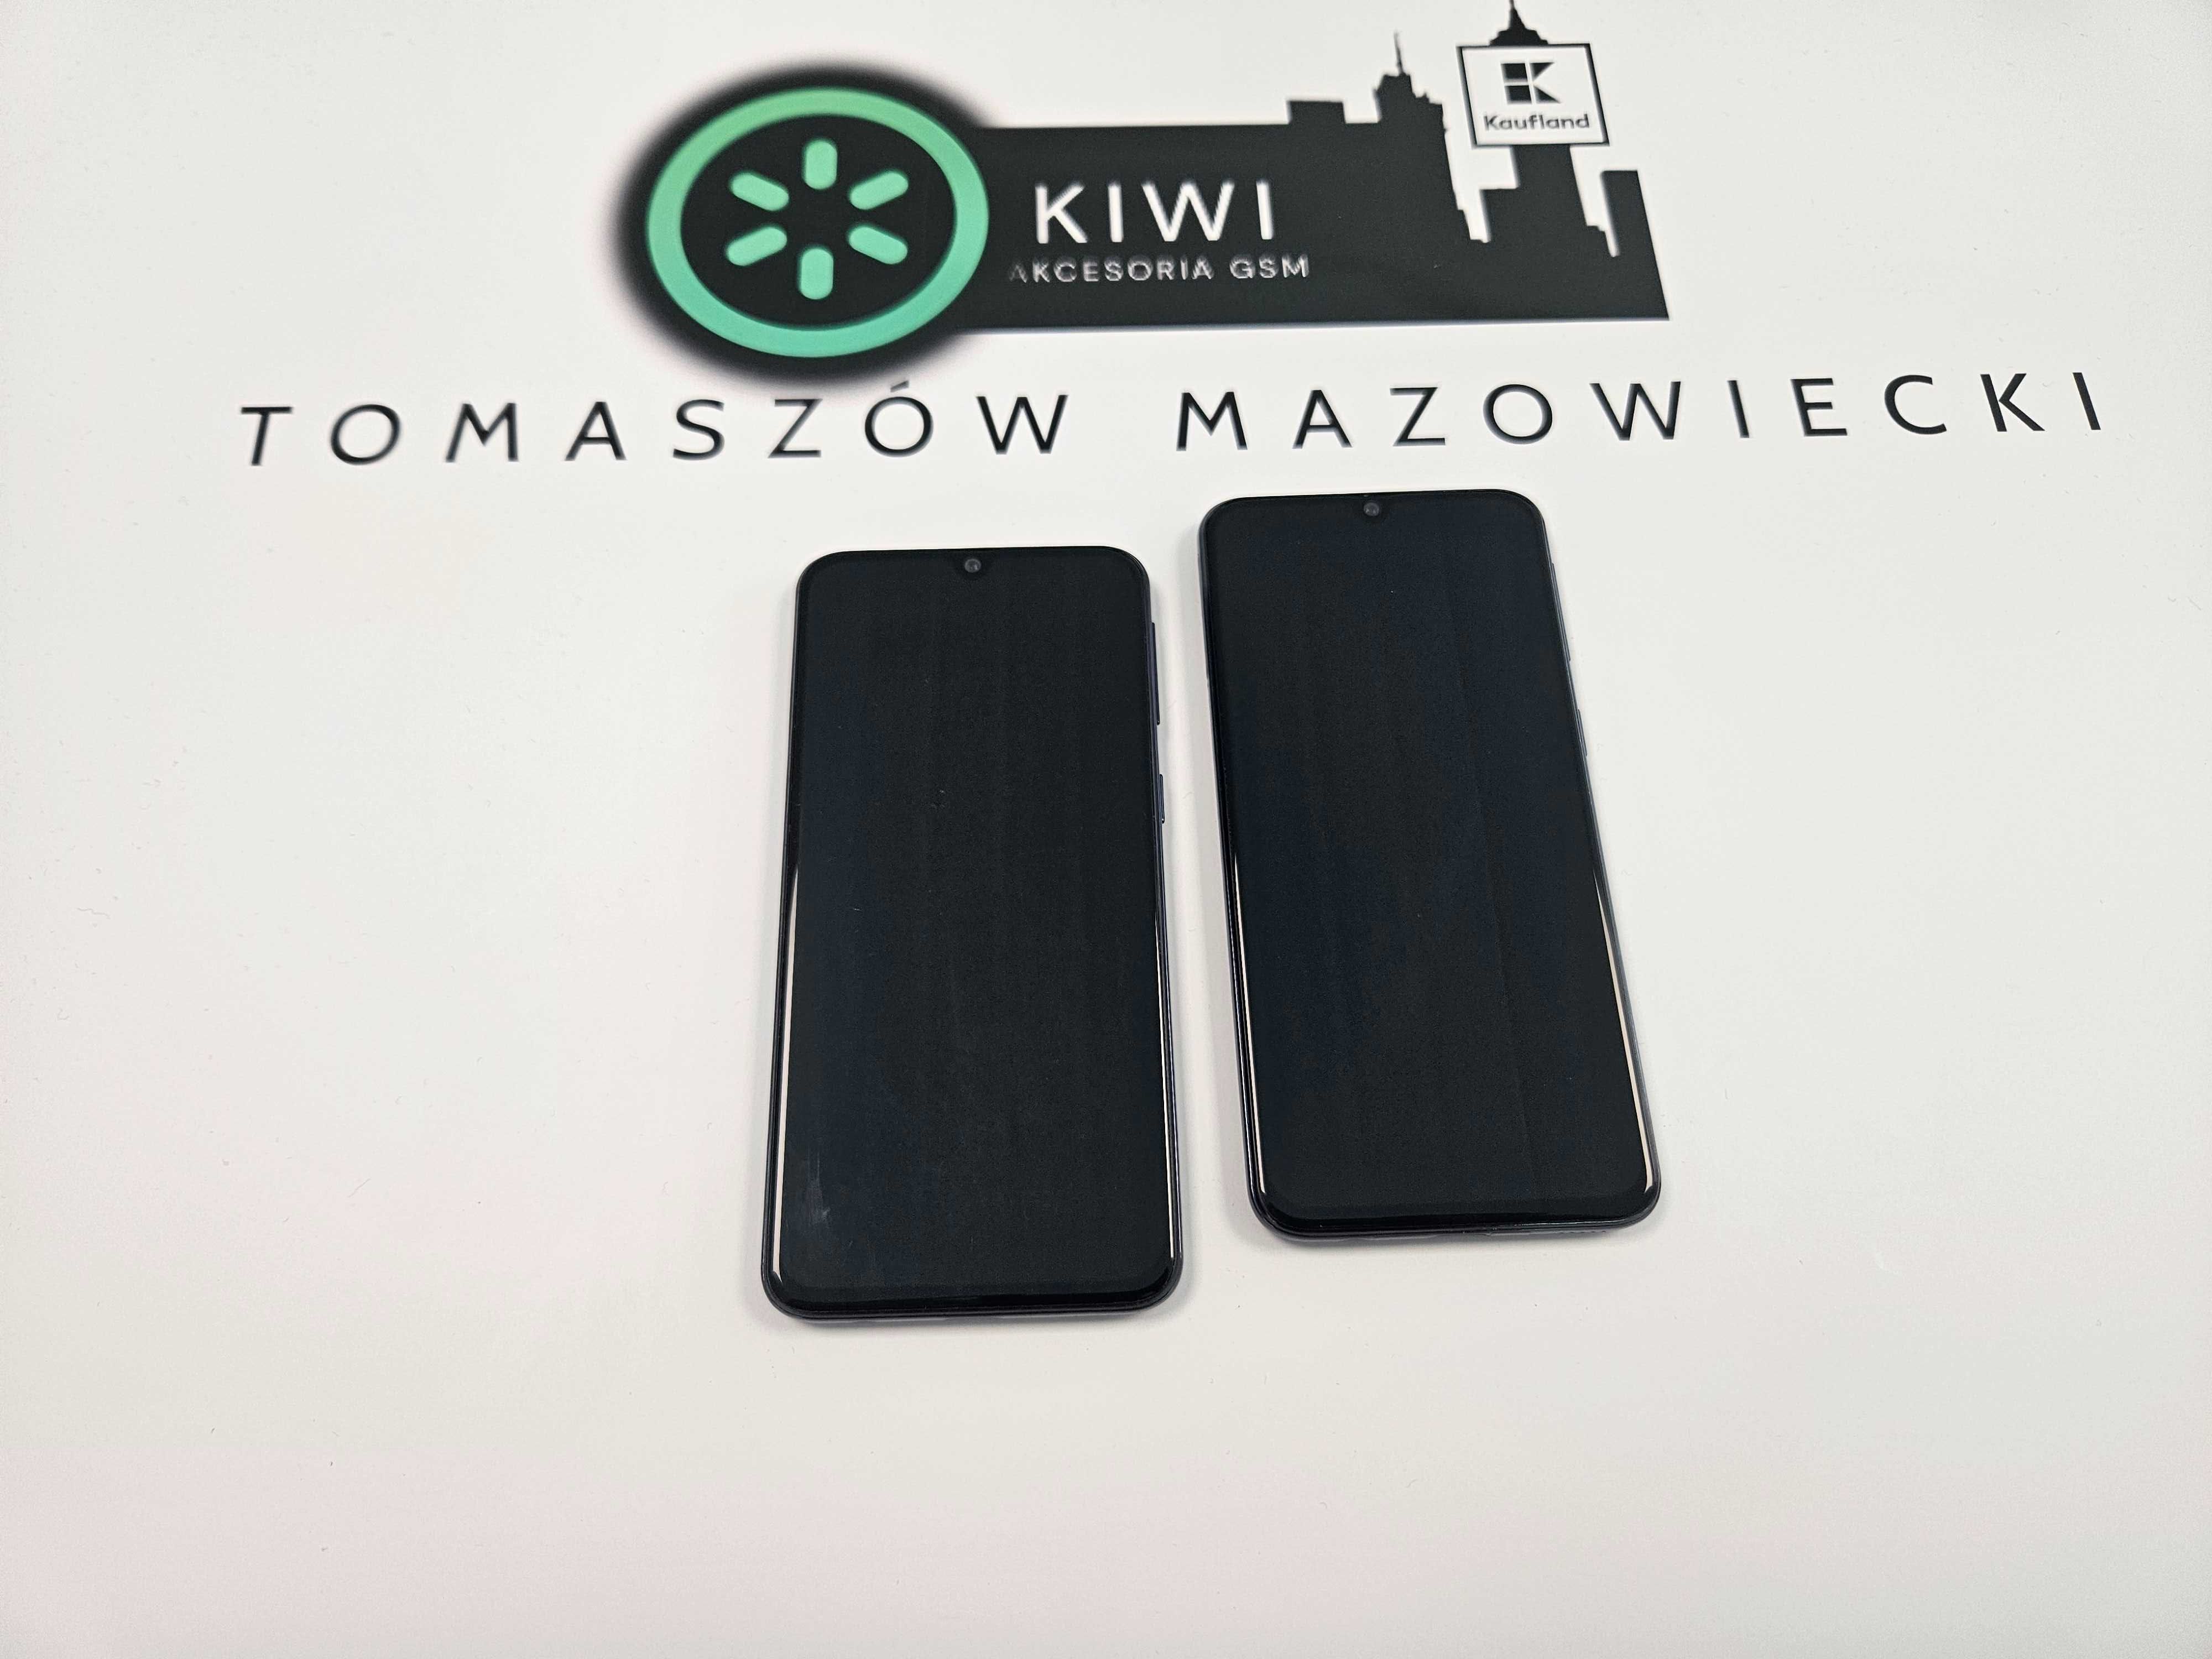 SAMSUNG GALAXY A40 4 GB / 64GB Sklep Tomaszów Maz. cena:399zł